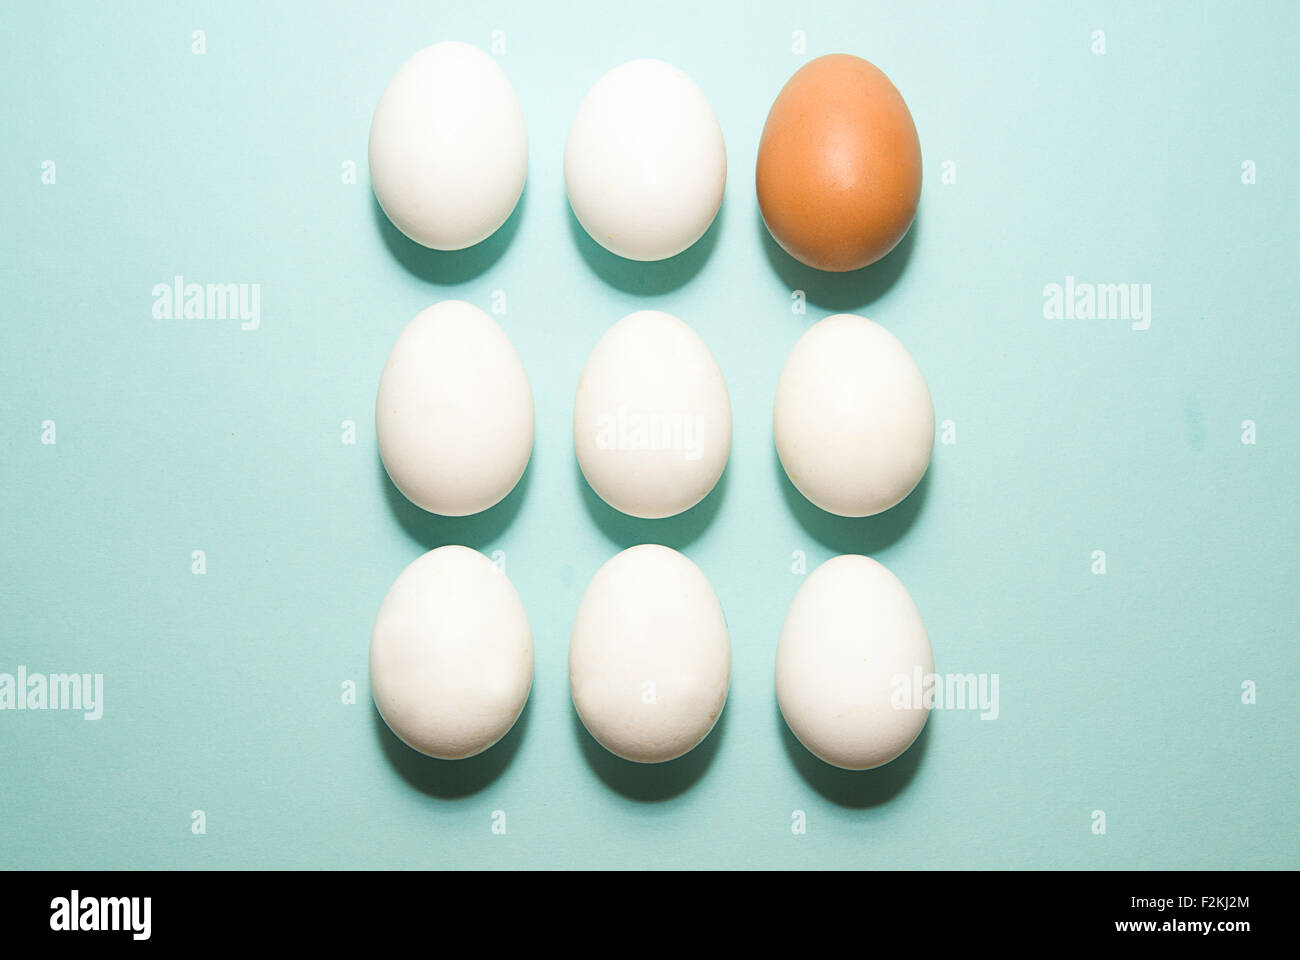 Uova di gallina di diversi colori su sfondo blu Foto Stock